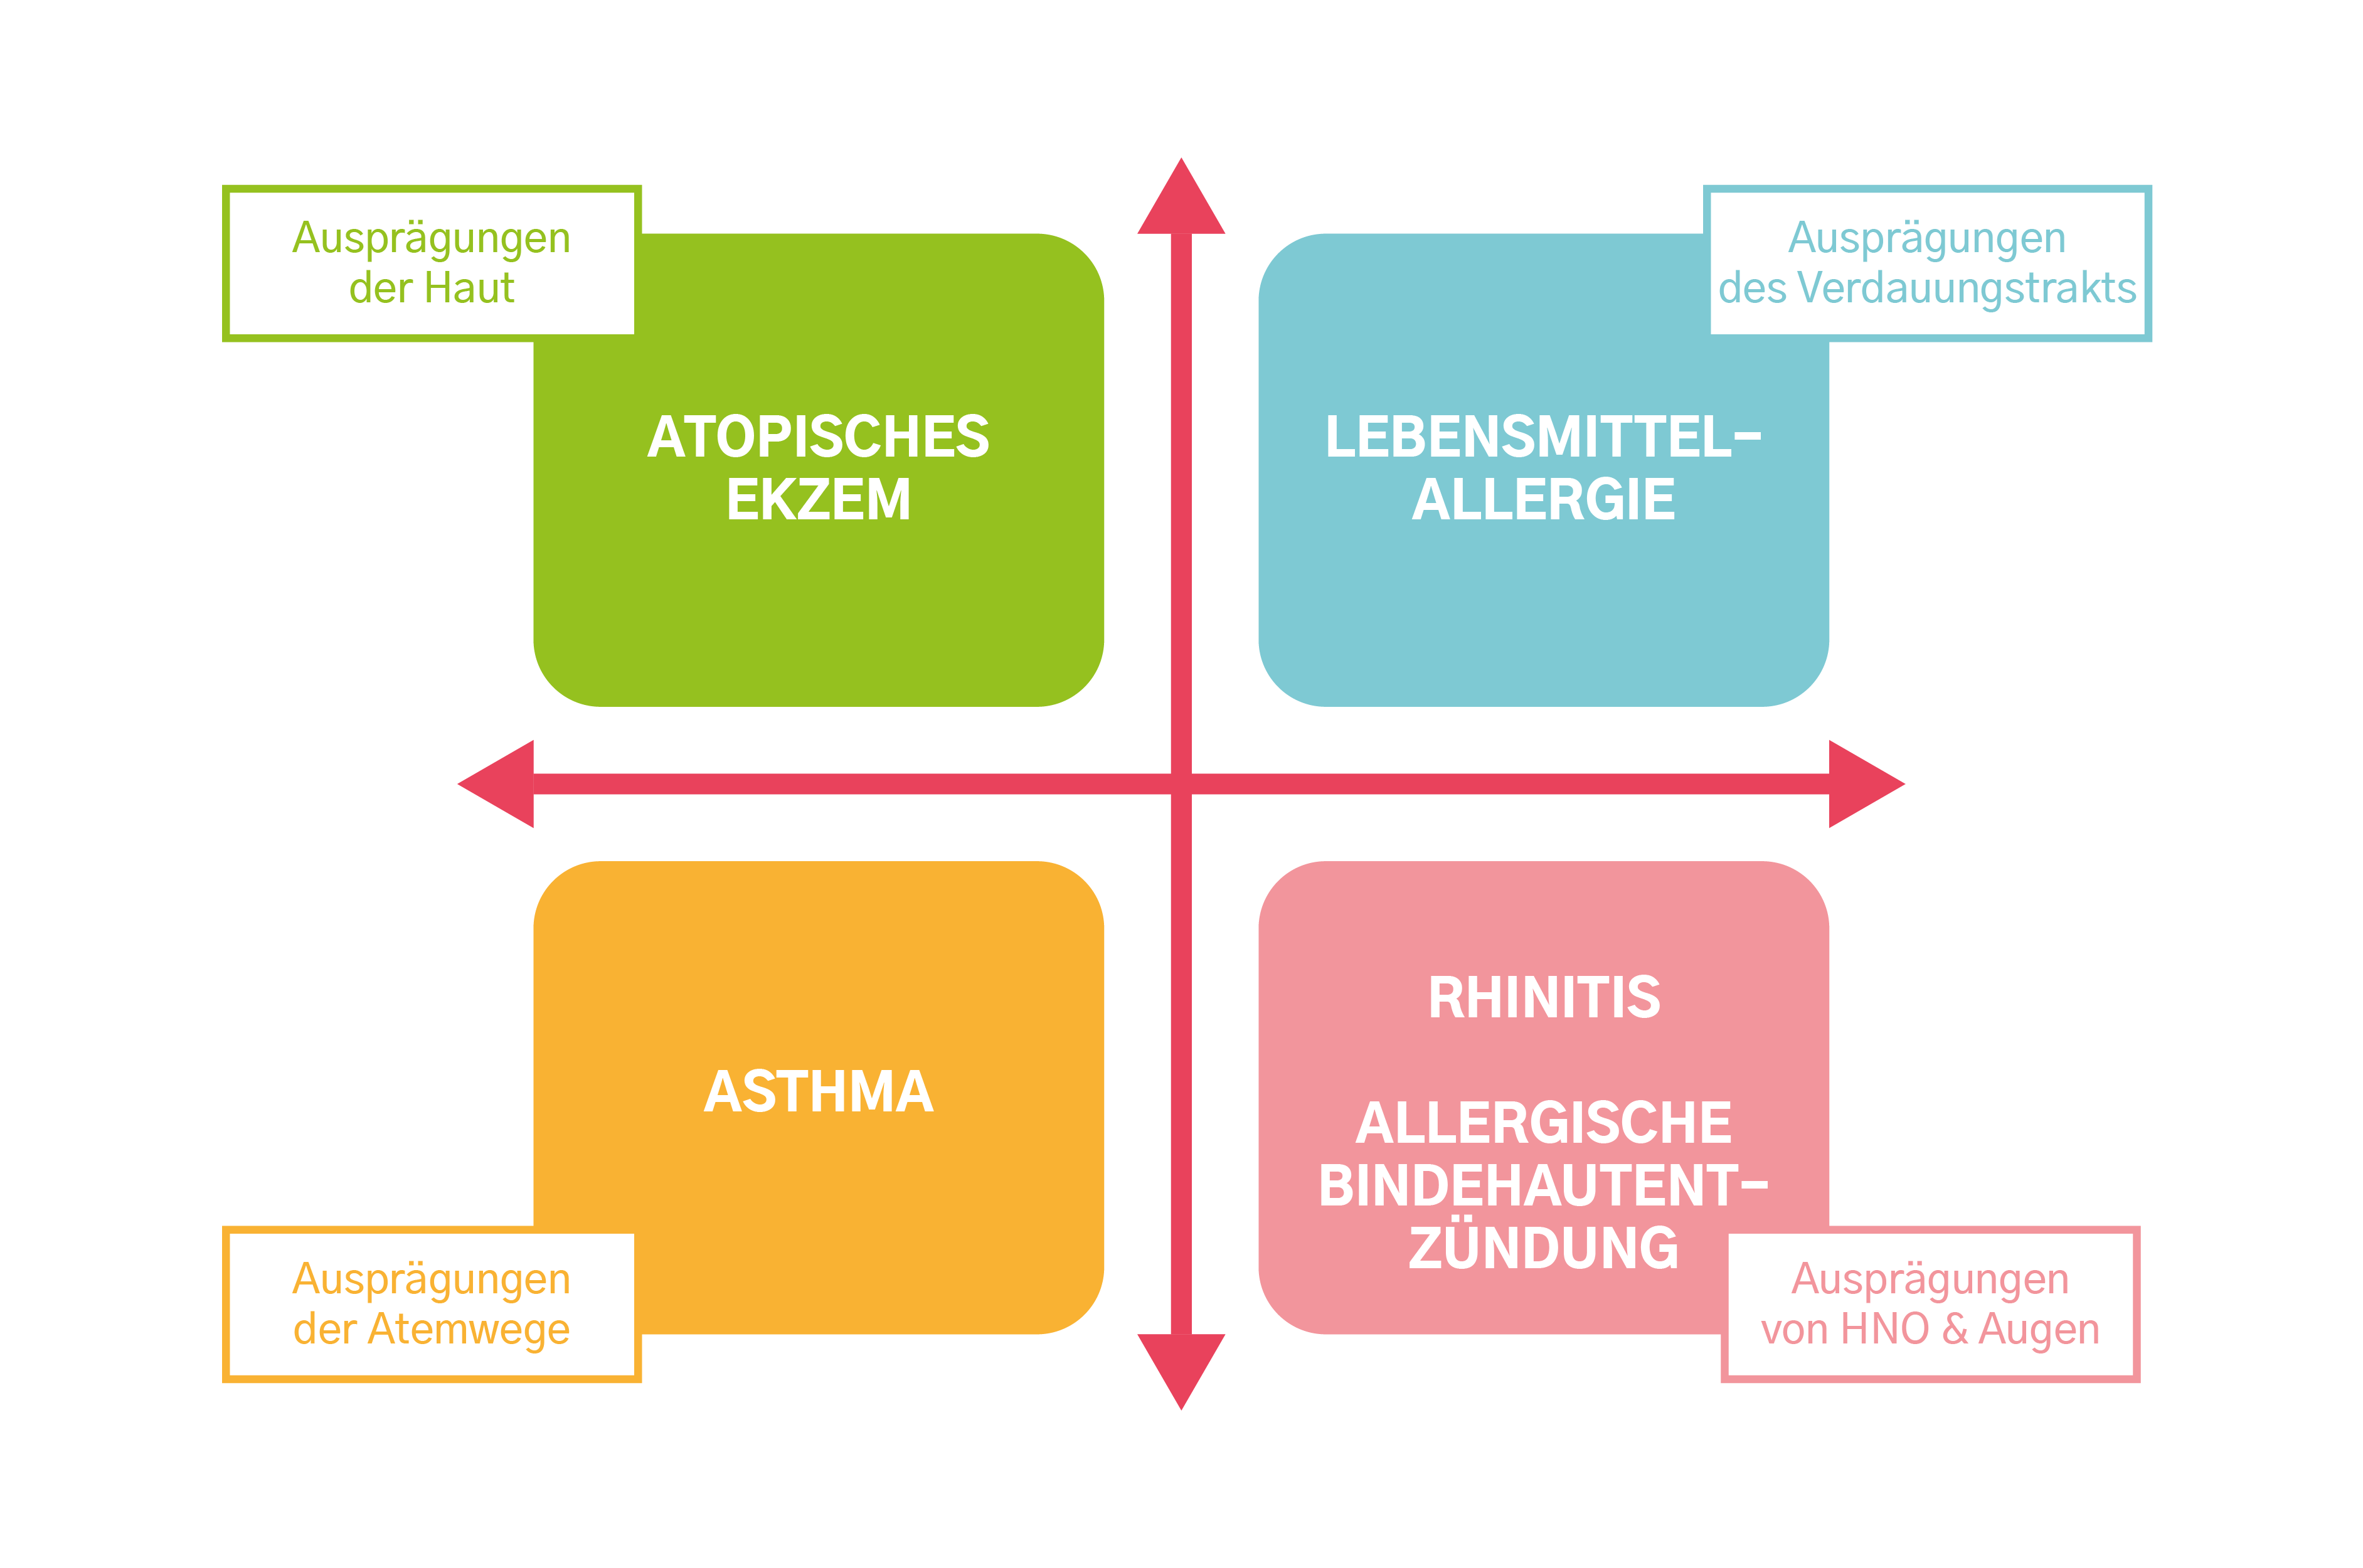 Die verschiedenen Erscheinungsformen der Atopie: atopisches Ekzem/Asthma/Nahrungsmittelallergie/Rhinitis - allergische Konjunktivitis